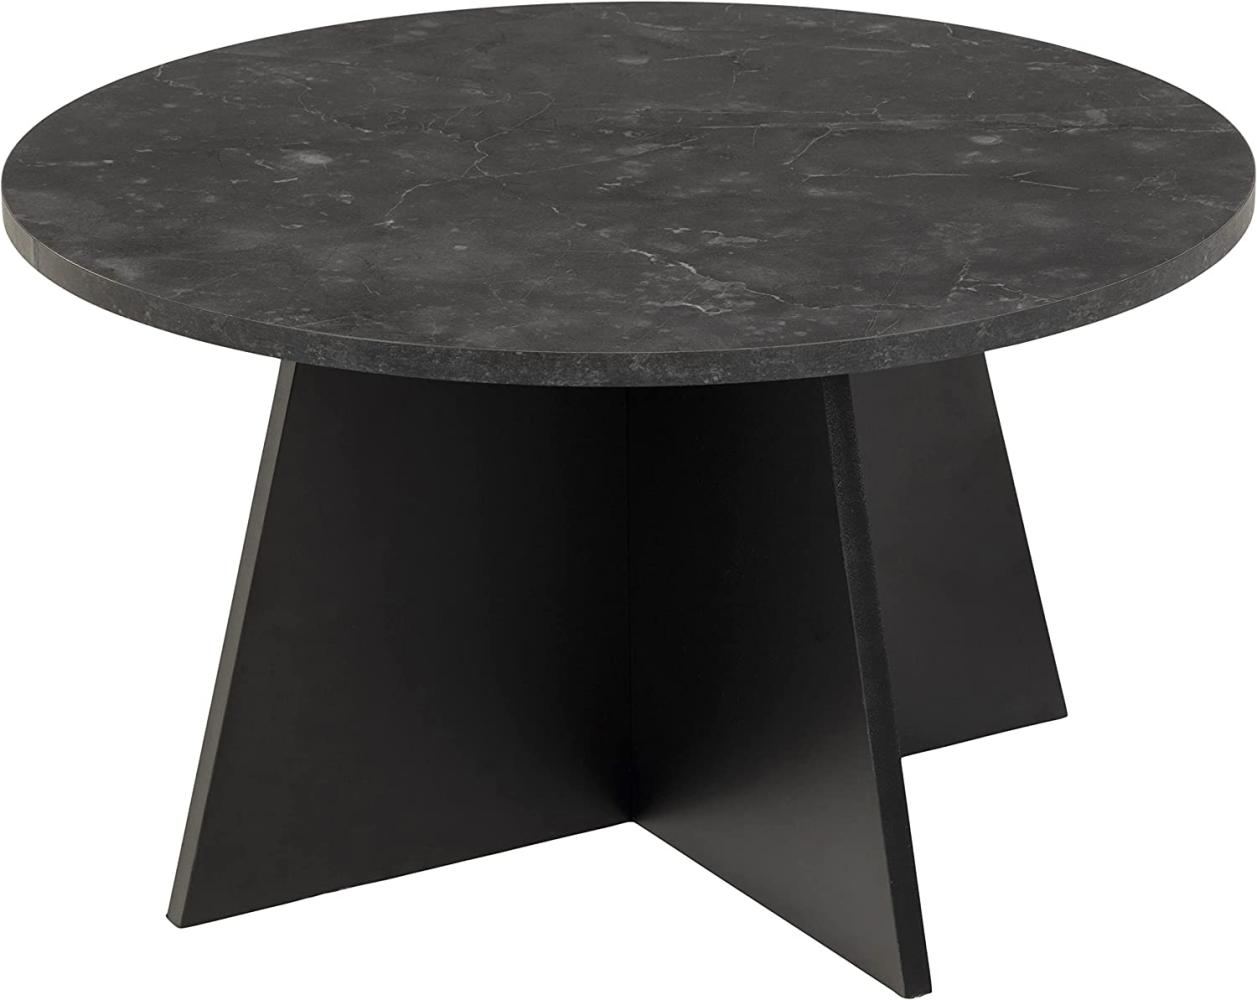 Axis Couchtisch 70cm schwarzer Marmordruck schwarz Tisch Beistelltisch Sofatisch Bild 1